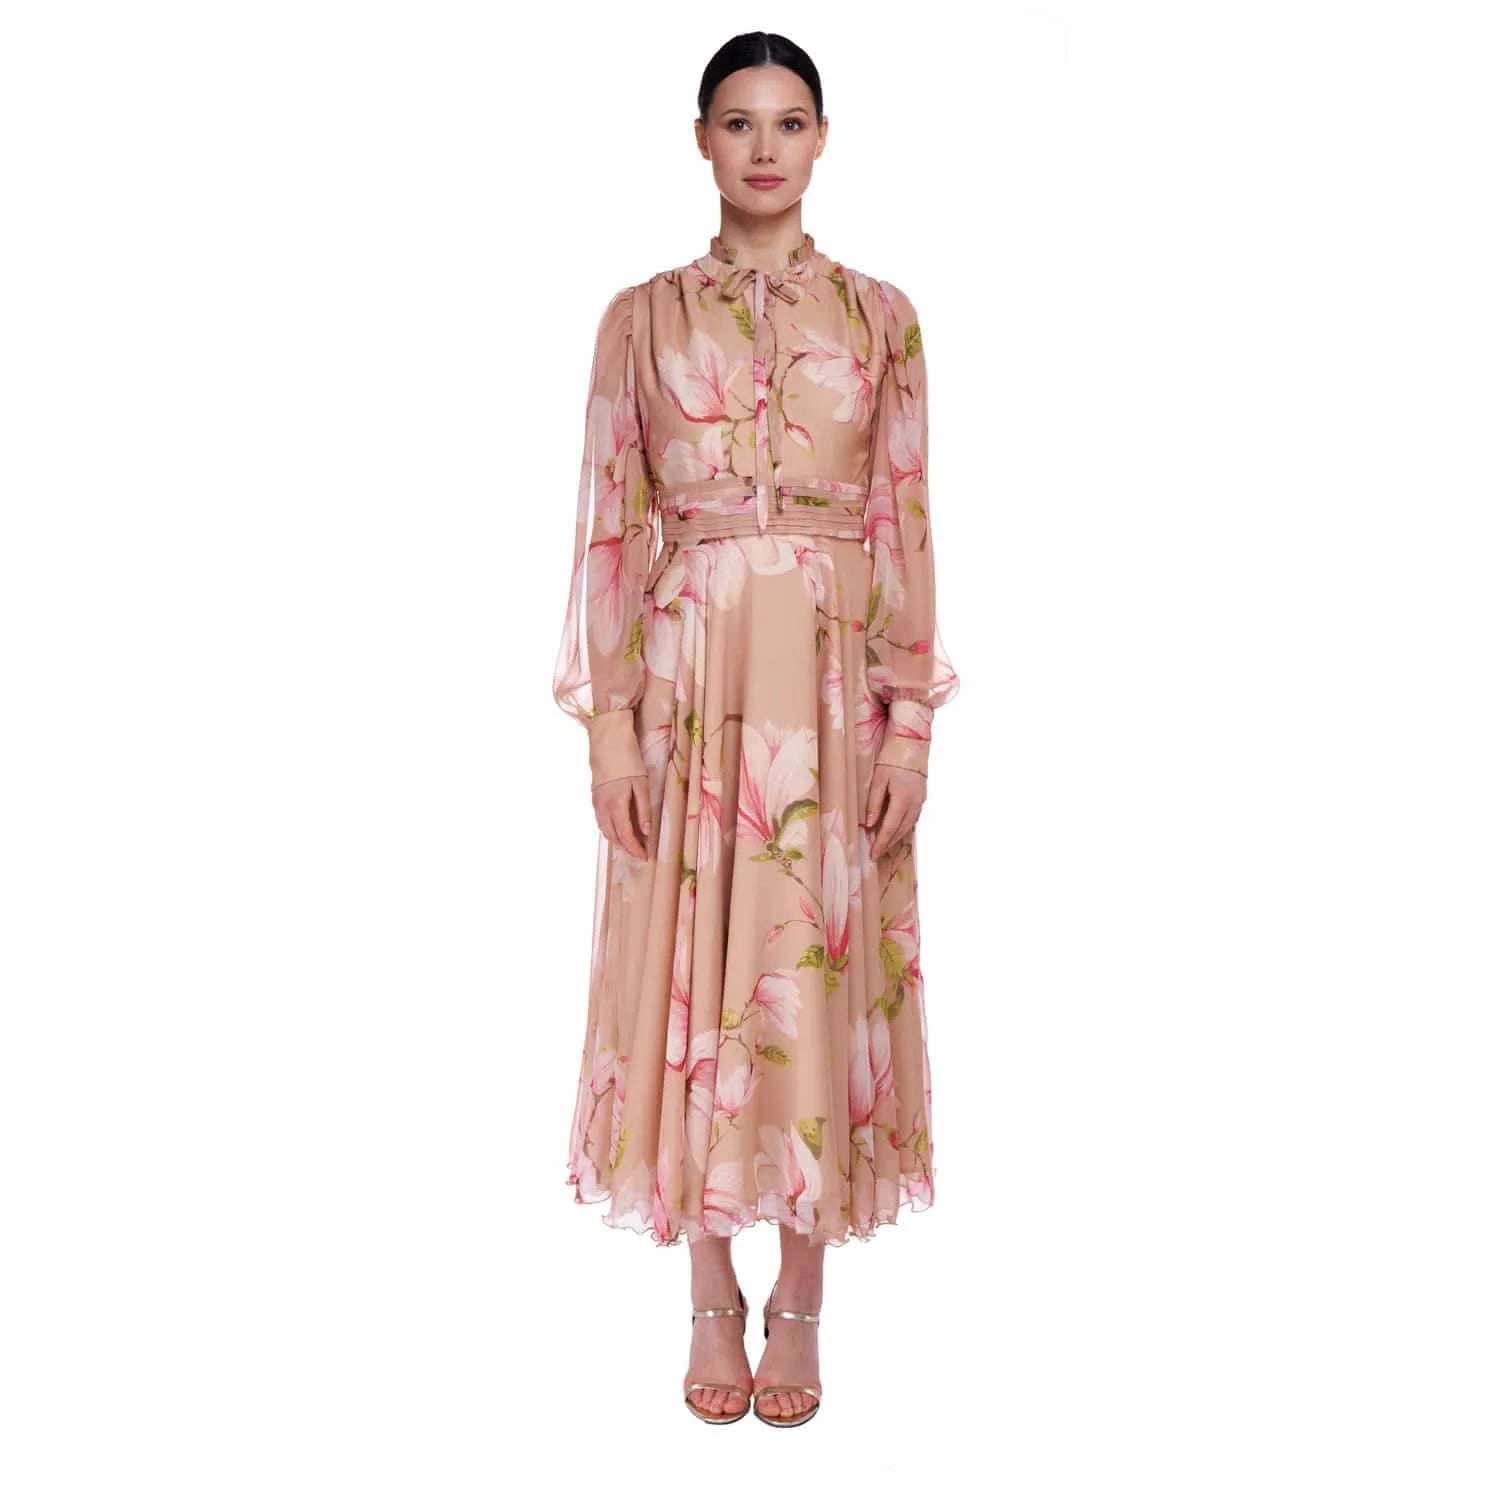 Magnolia silk dress - Dress